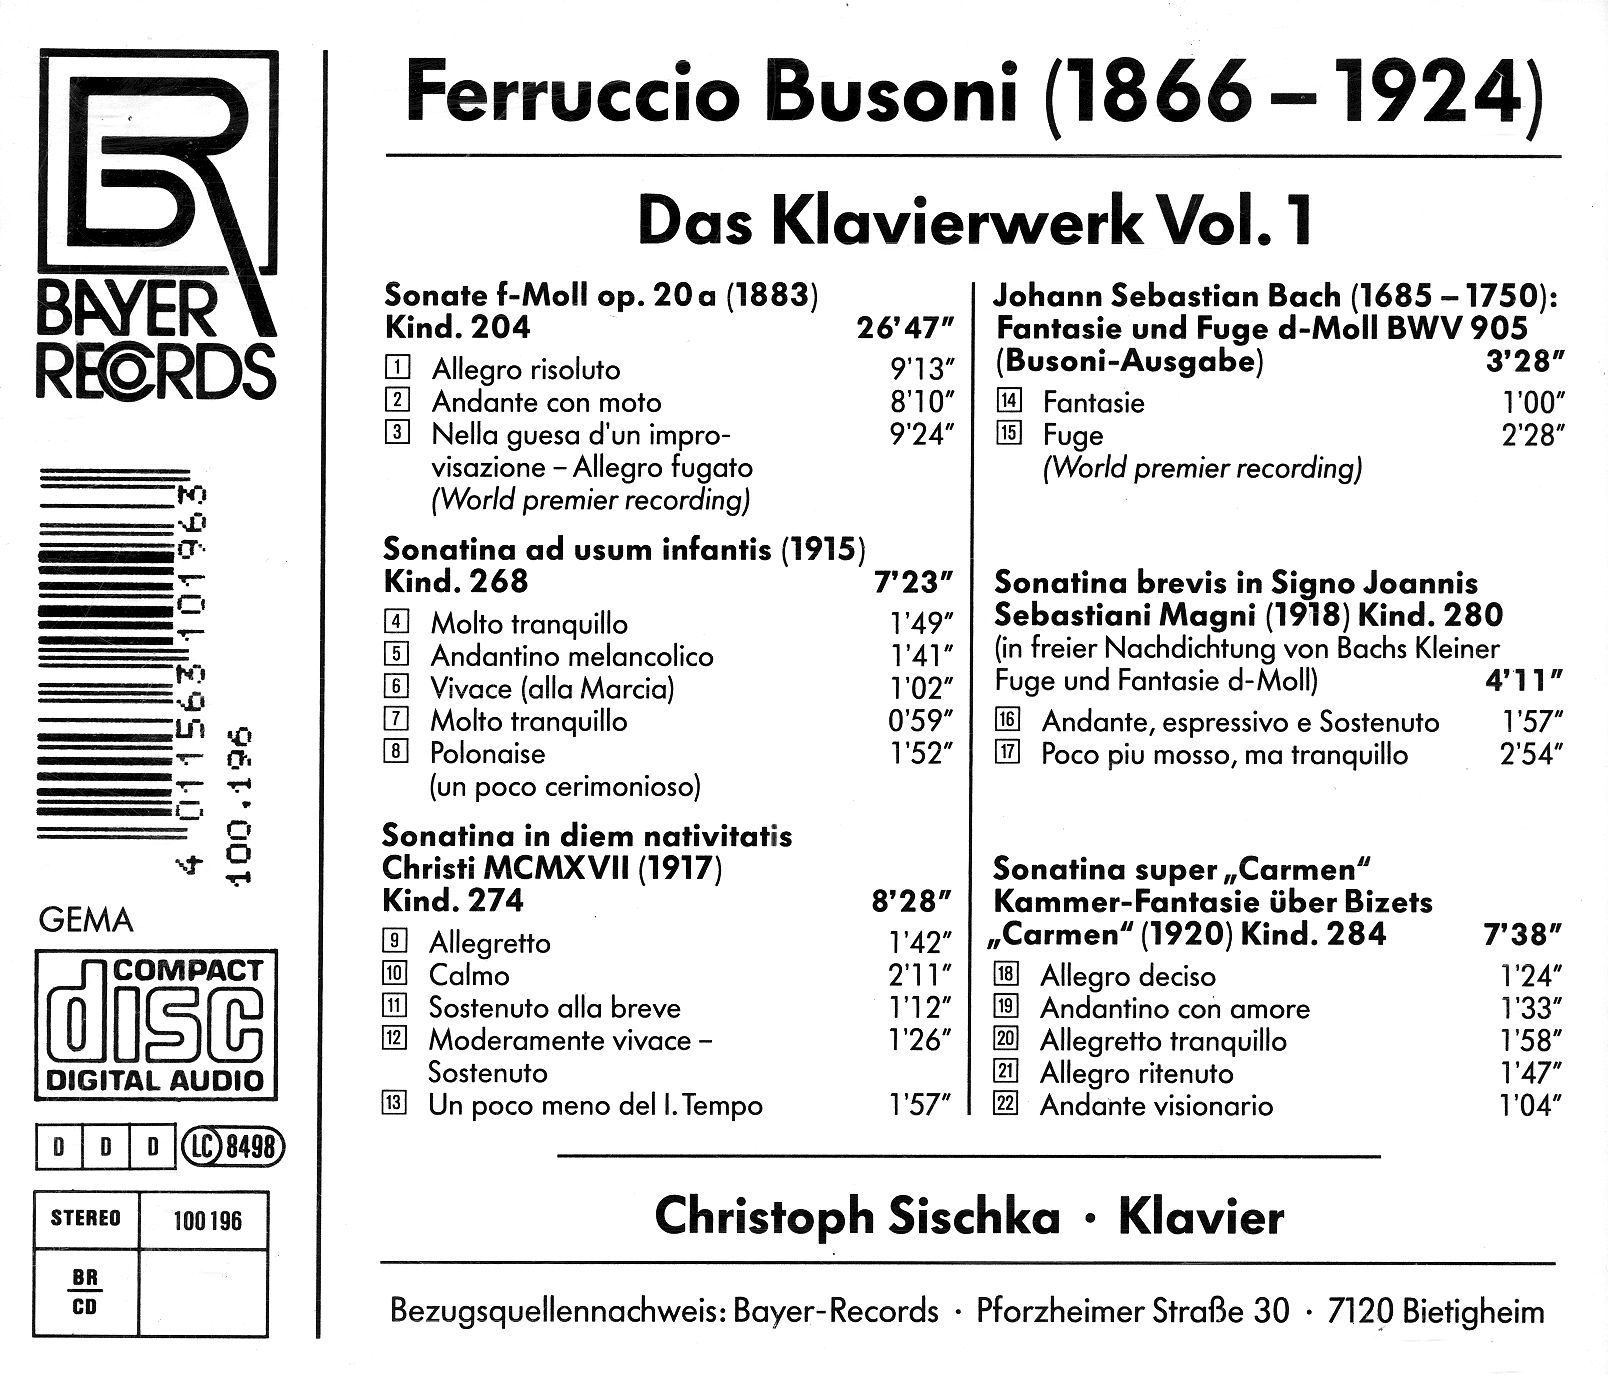 Ferruccio Busoni - Das Klavierwerk I